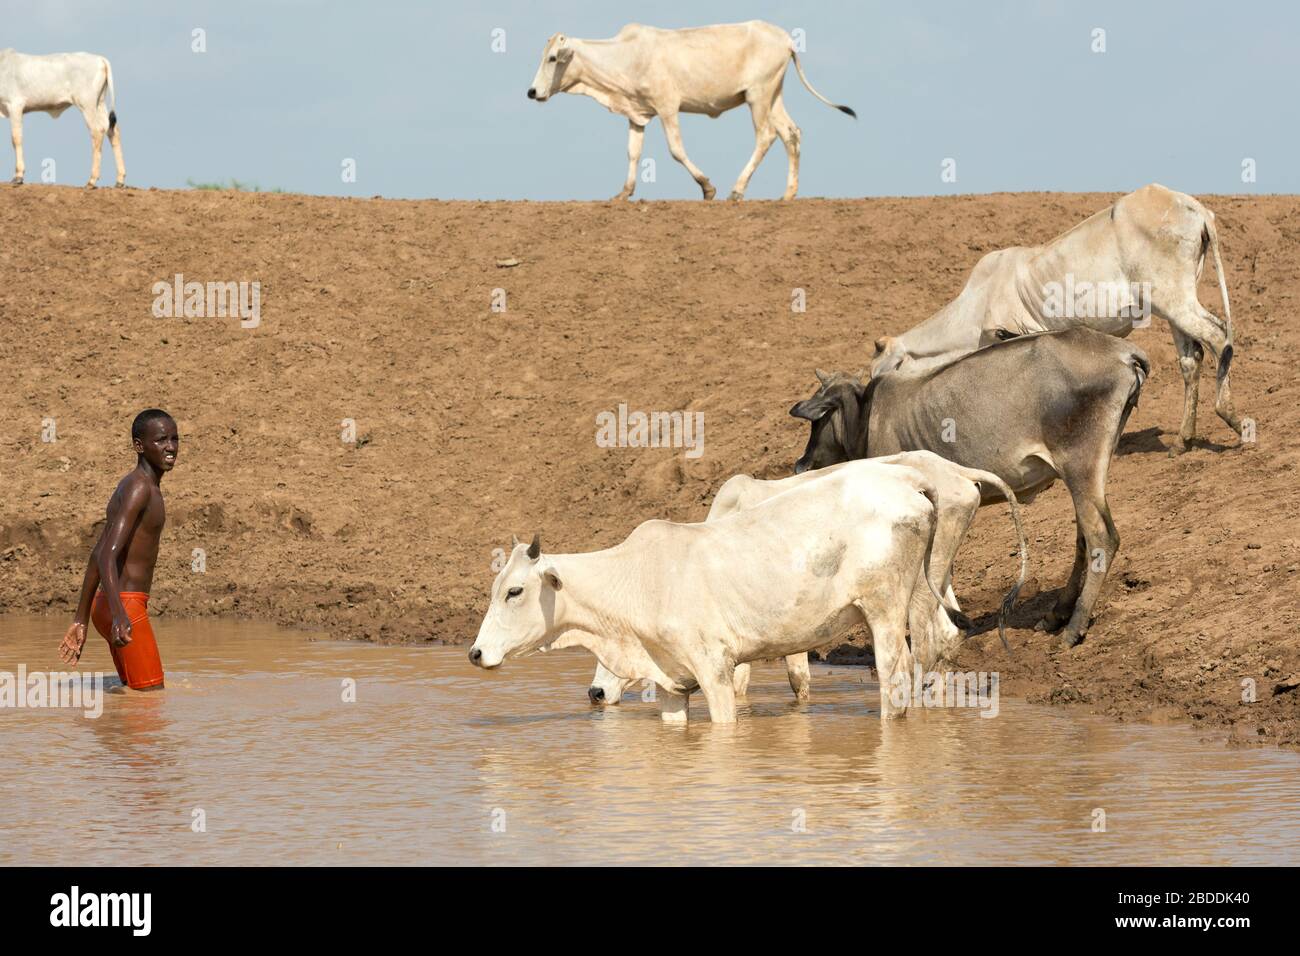 11.11.2019, Gode, région somalienne, Ethiopie - le troupeau africain de vaches se dresse à un auge d'eau. Un homme se rafraîchit dans l'eau. Documentation du projet Banque D'Images